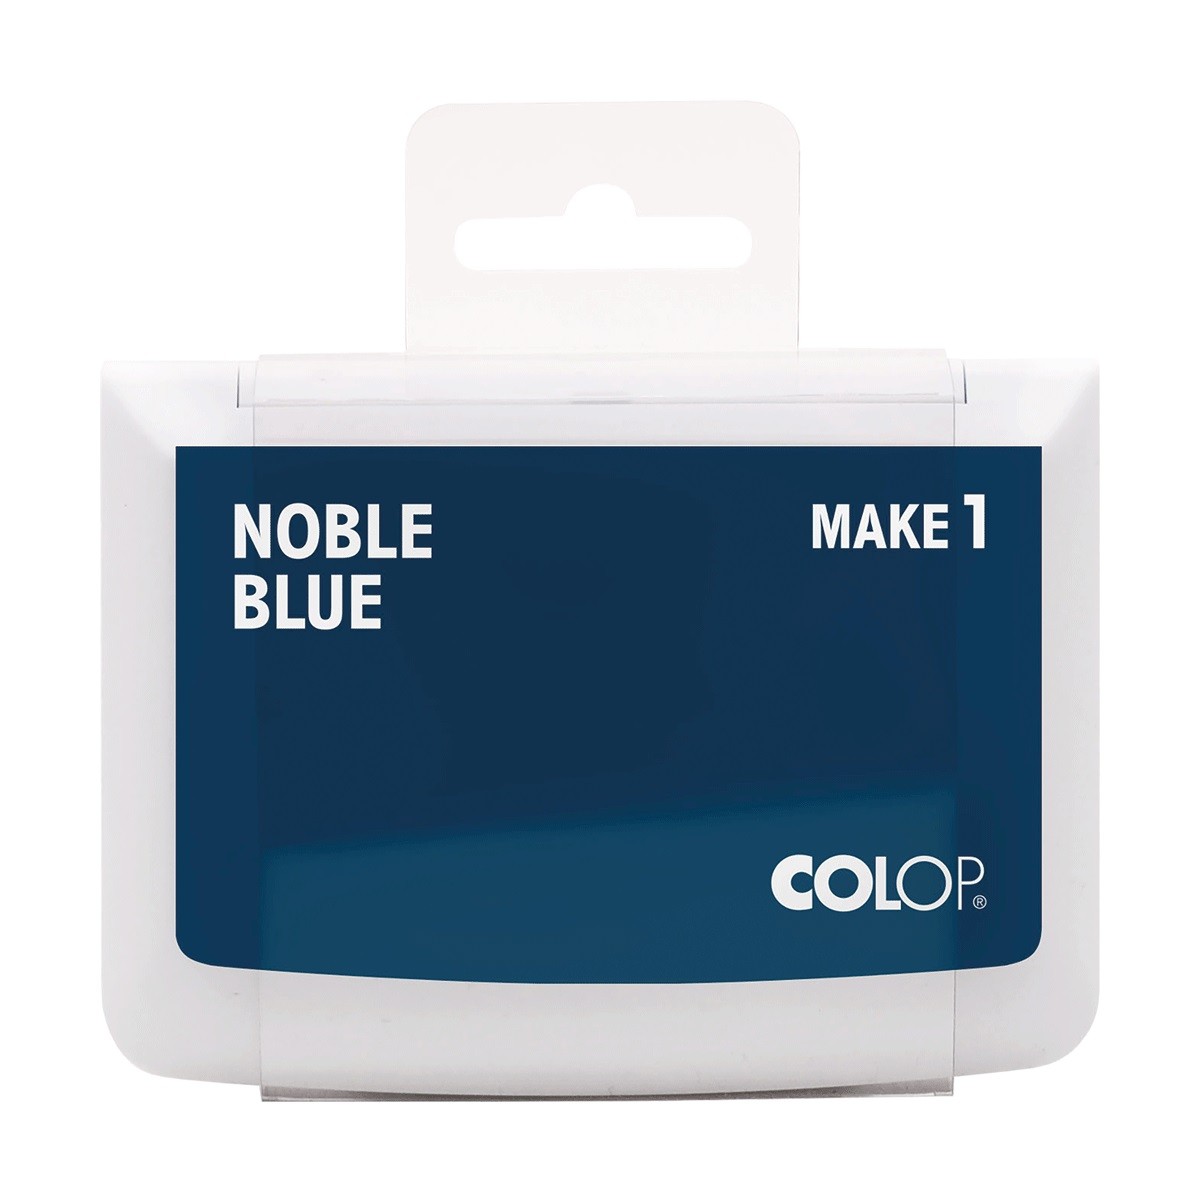 COLOP Arts & Crafts MAKE 1 Ταμπόν Σφραγίδας Noble Blue